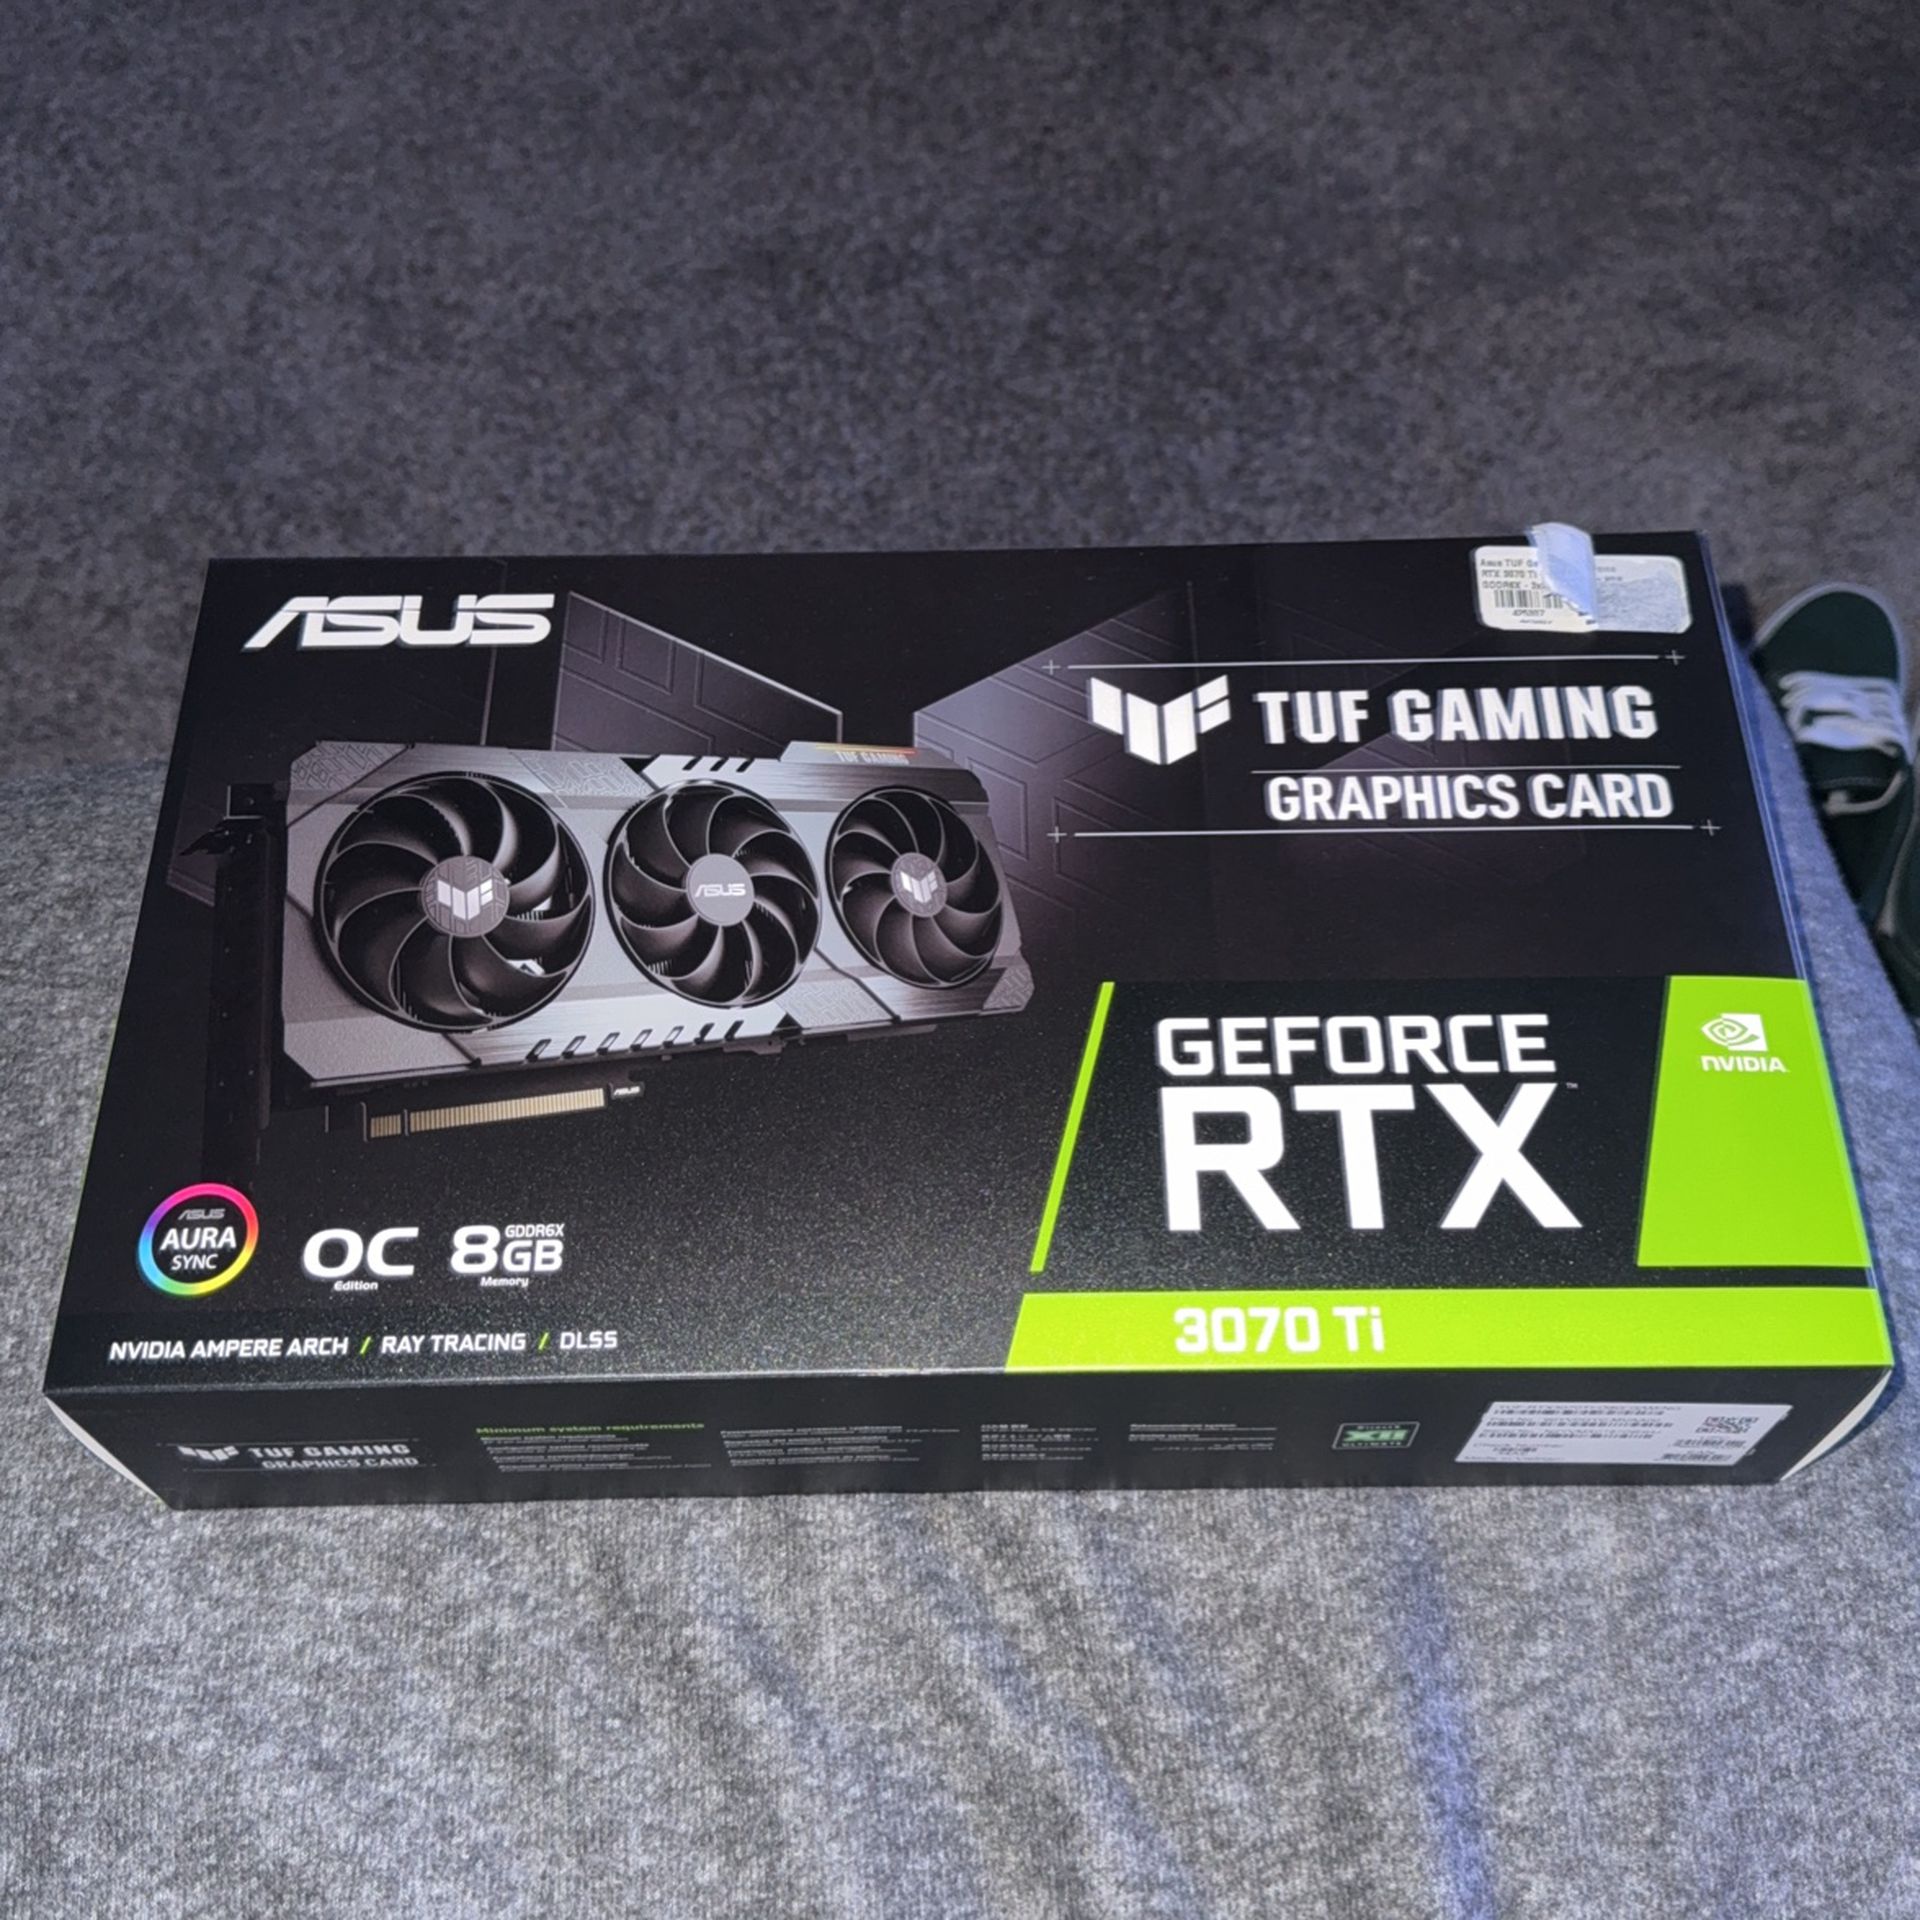 GeForce RTX 3070 TI ASUS TUF GAMING 8GB